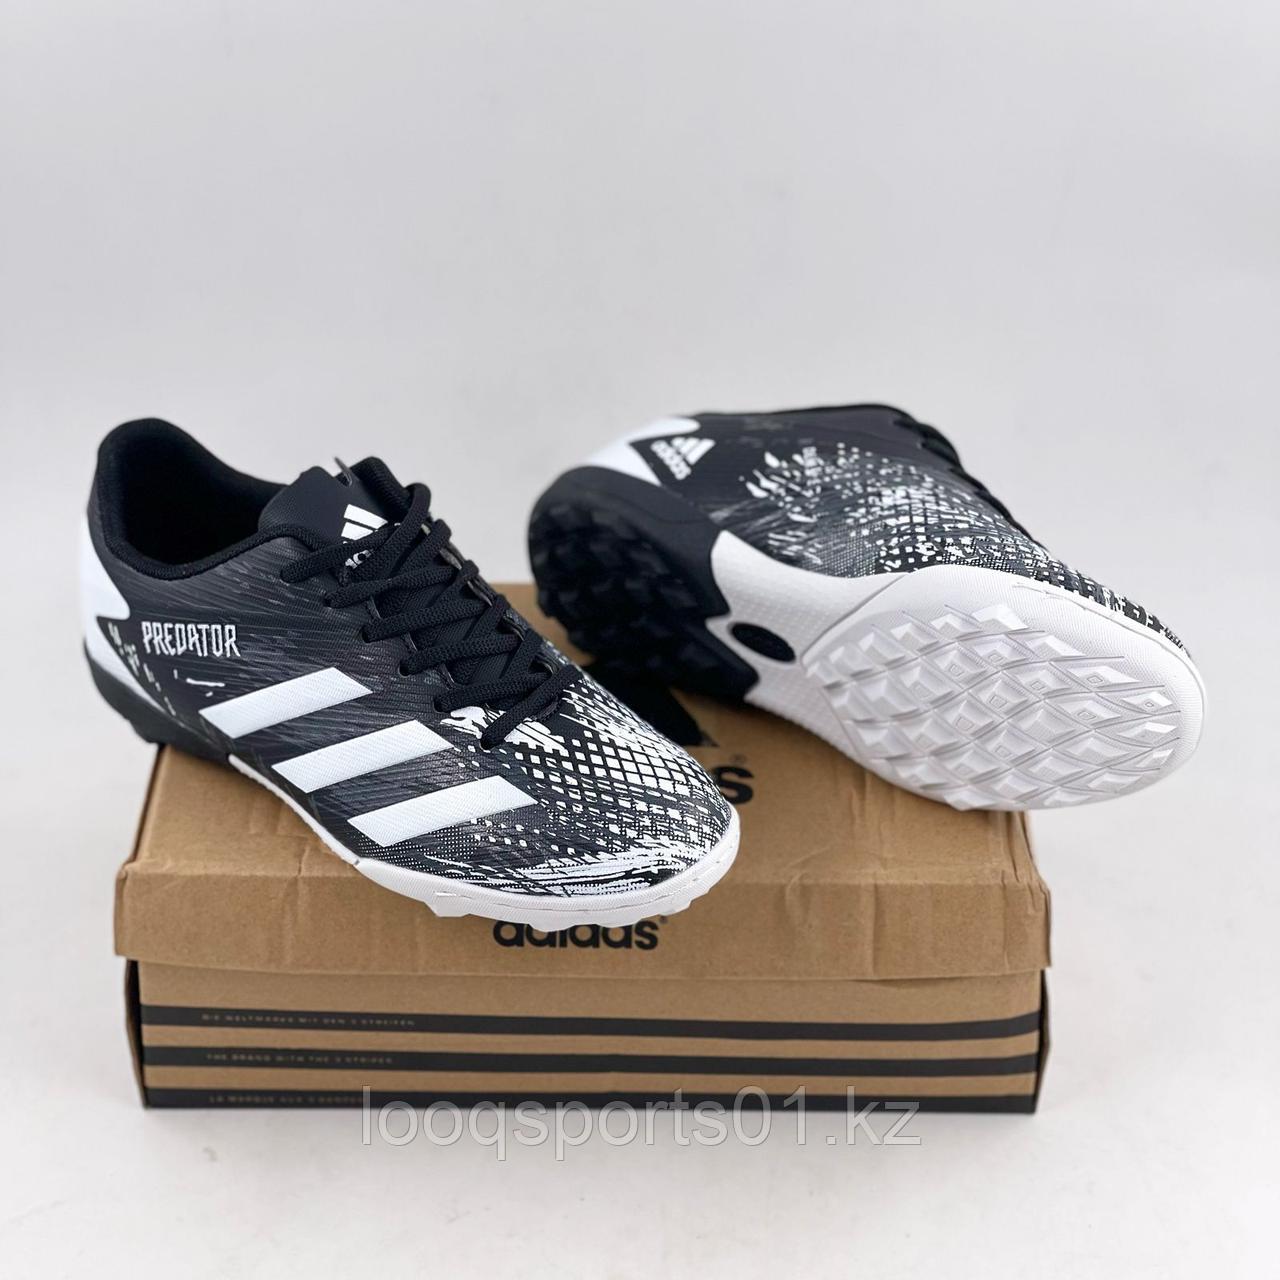 Футбольные бутсы сороконожки, миники (обувь для футбола) Adidas